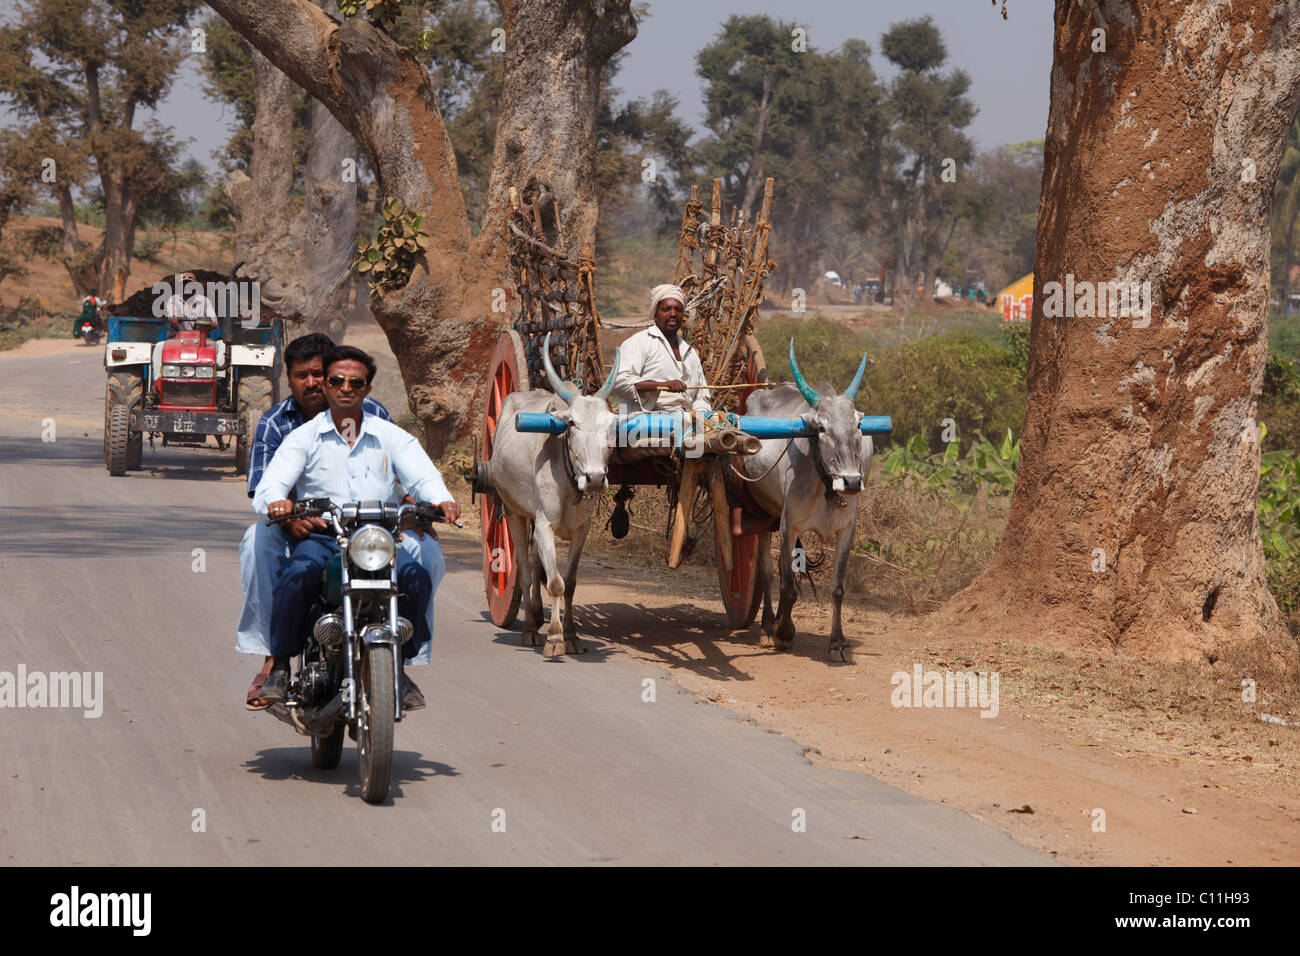 Verkehr mit Motorrad, Ochsenkarren und Traktor auf Landstraße, Karnataka, Südindien, Indien, Südasien, Asien Stockfoto